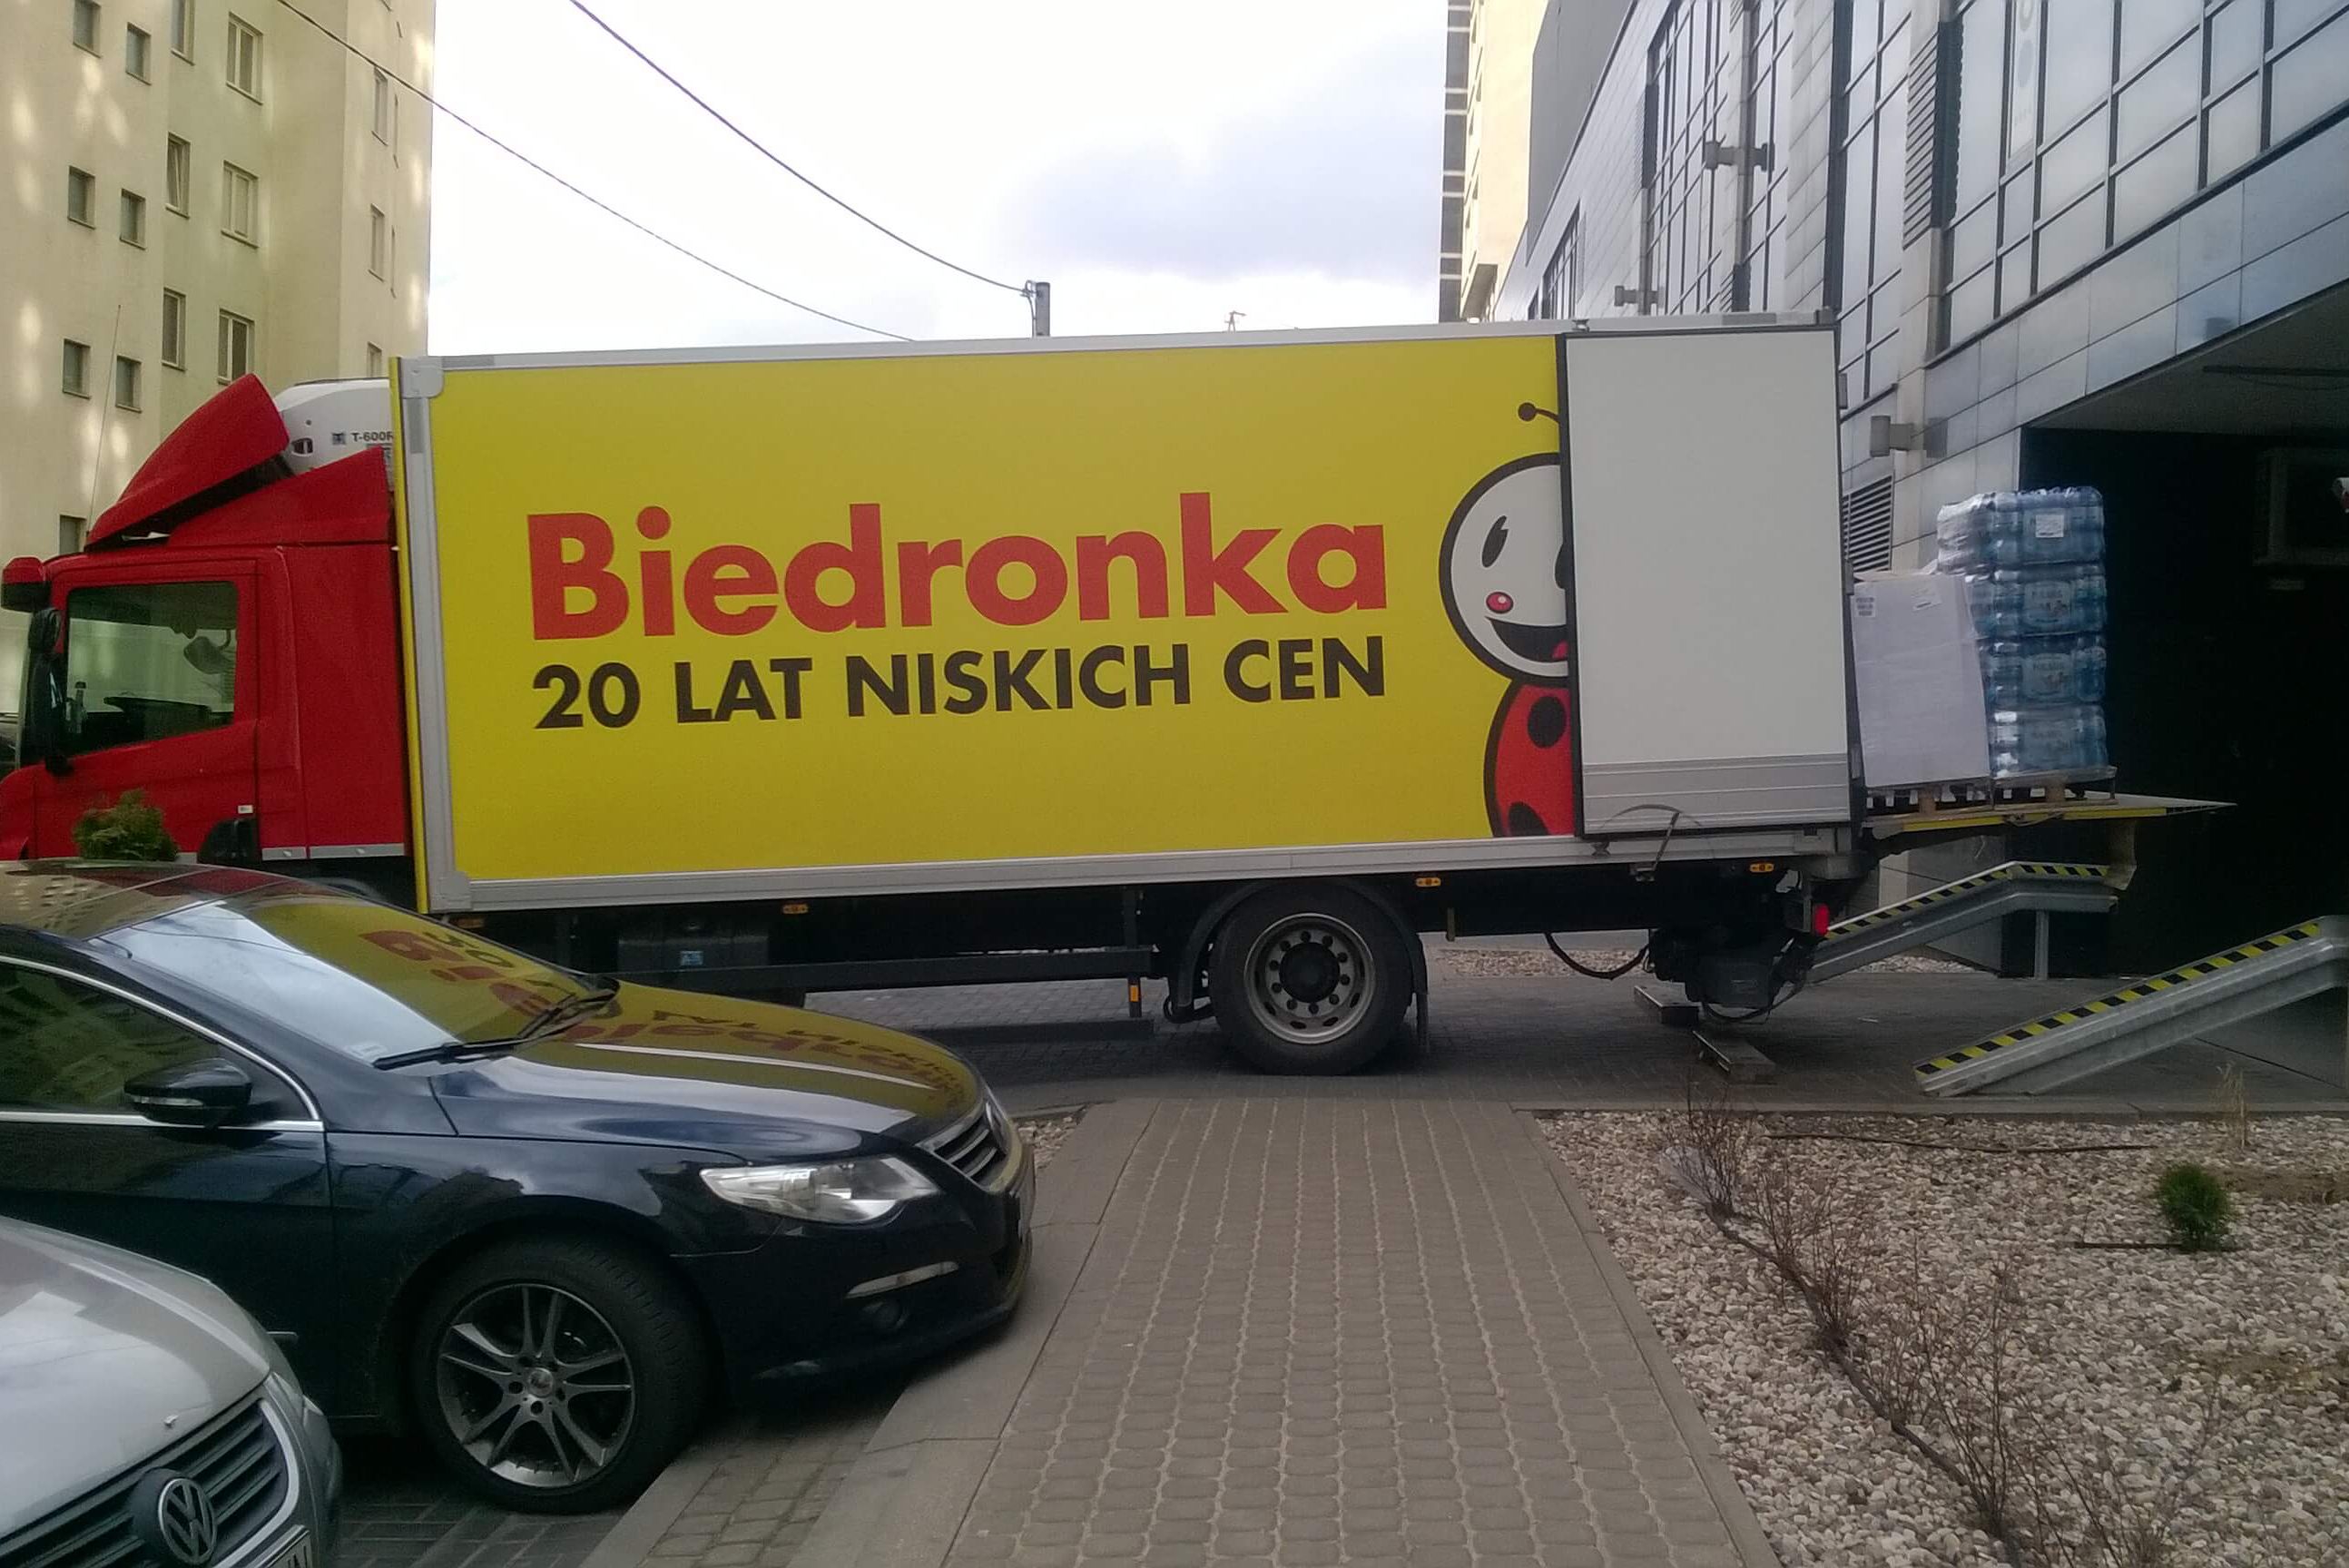 Biedronka - Warszawa - dostawa towaru